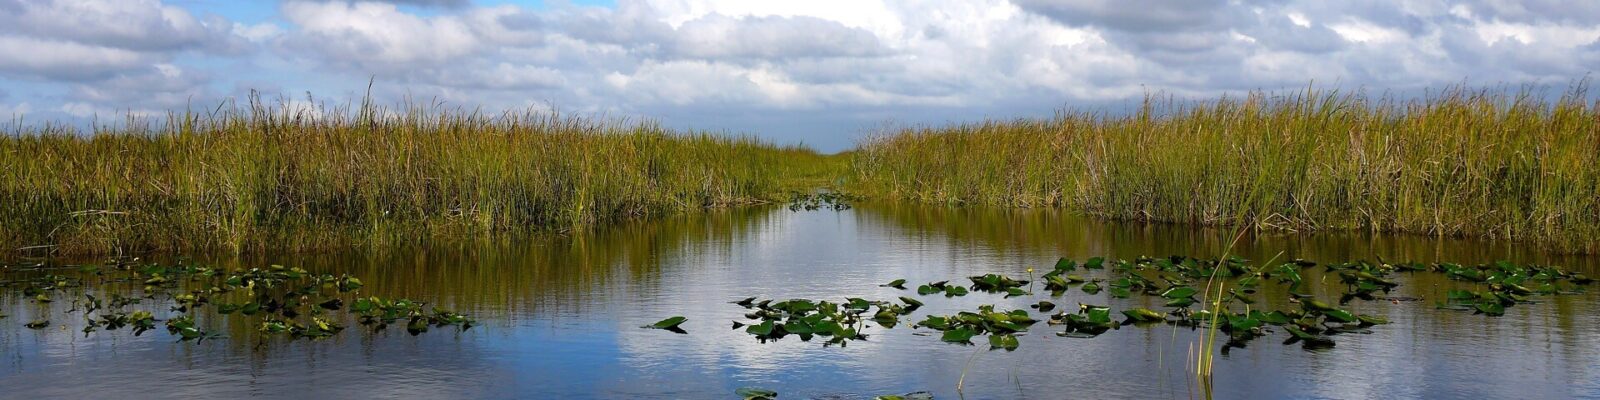 Exploring Florida’s amazing Everglades